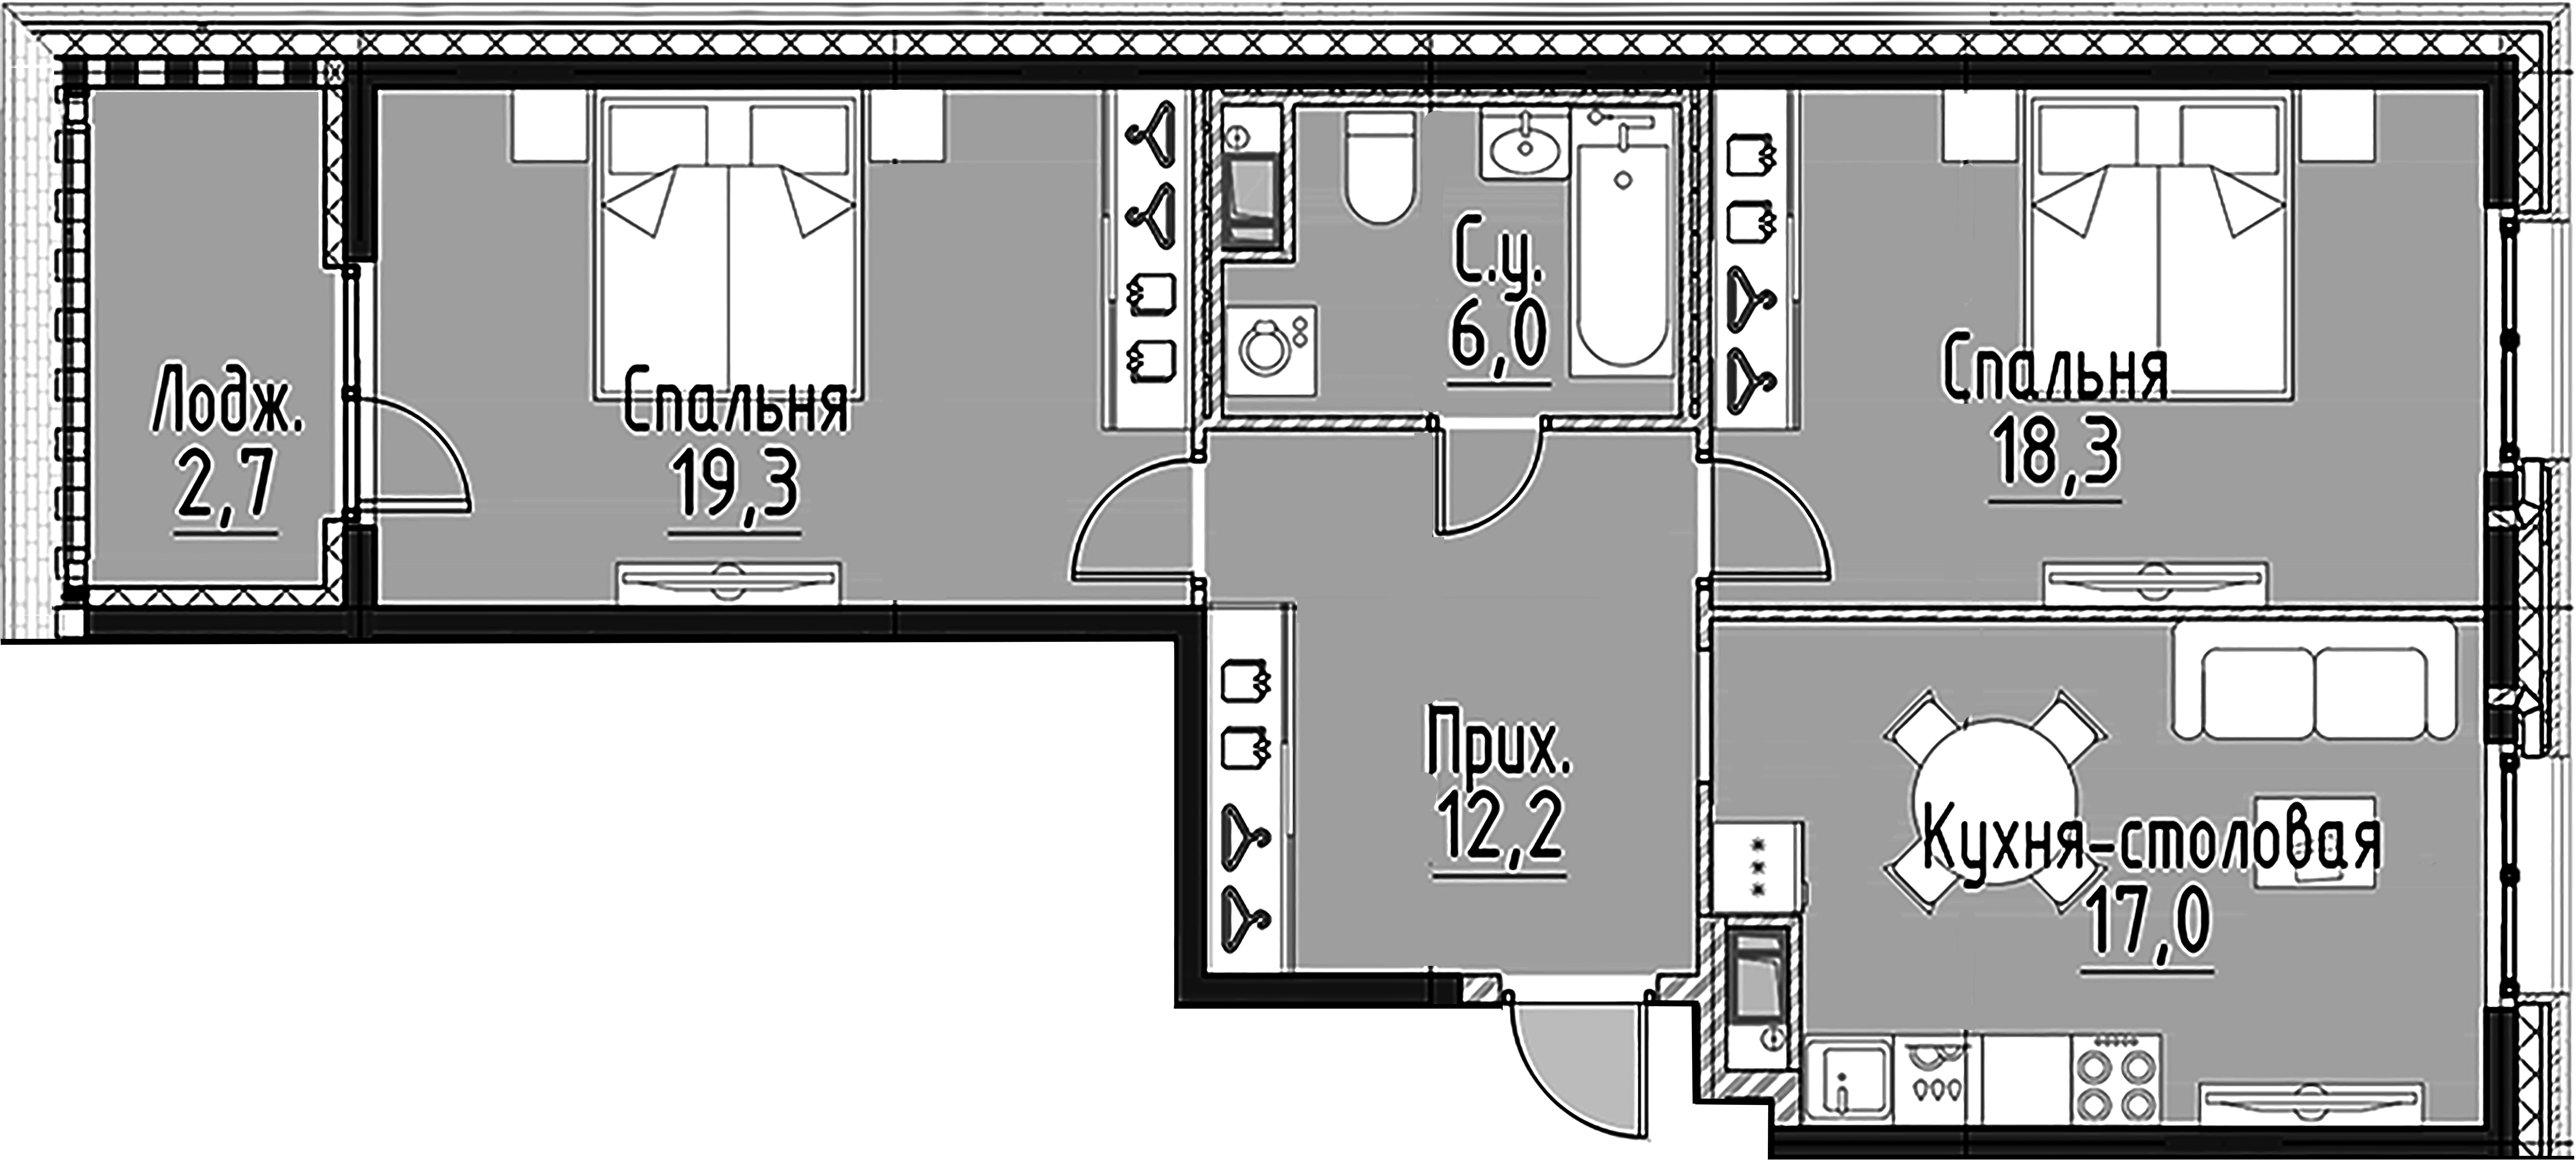 2-комнатная квартира  №81 в Моисеенко, 10: 72.6 м², этаж 6 - купить в Санкт-Петербурге